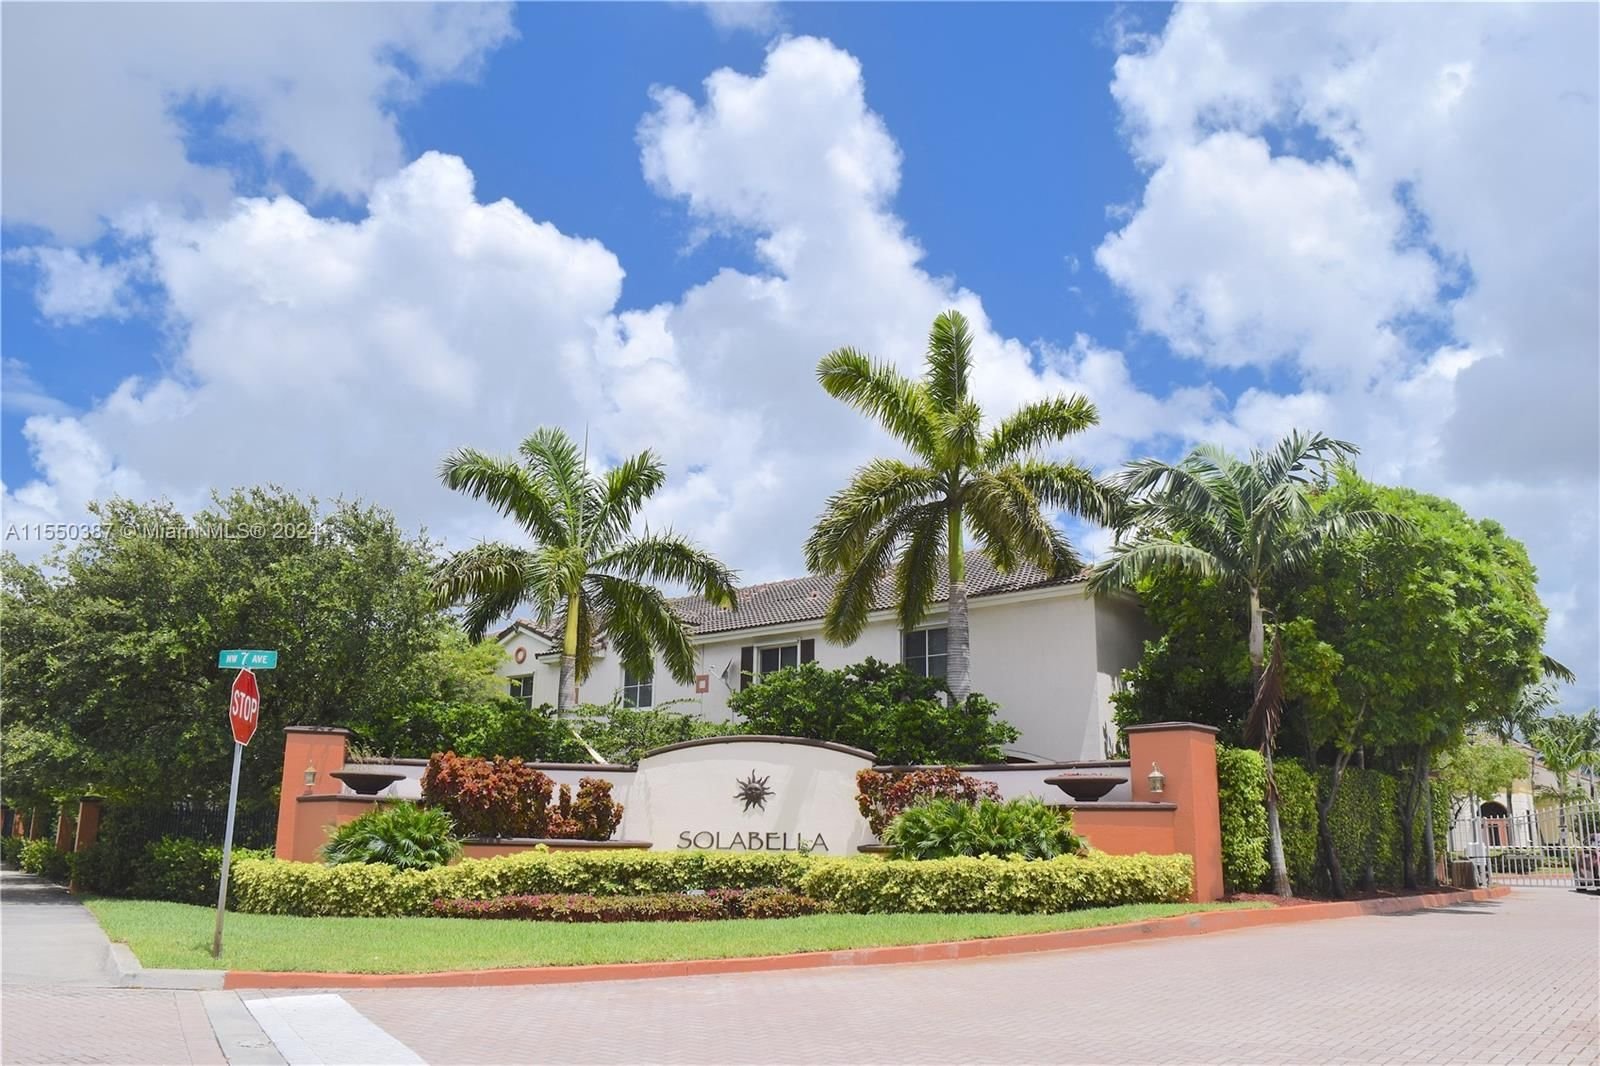 Real estate property located at 17335 7th Ave #302, Miami-Dade County, SOLABELLA CONDO, Miami Gardens, FL